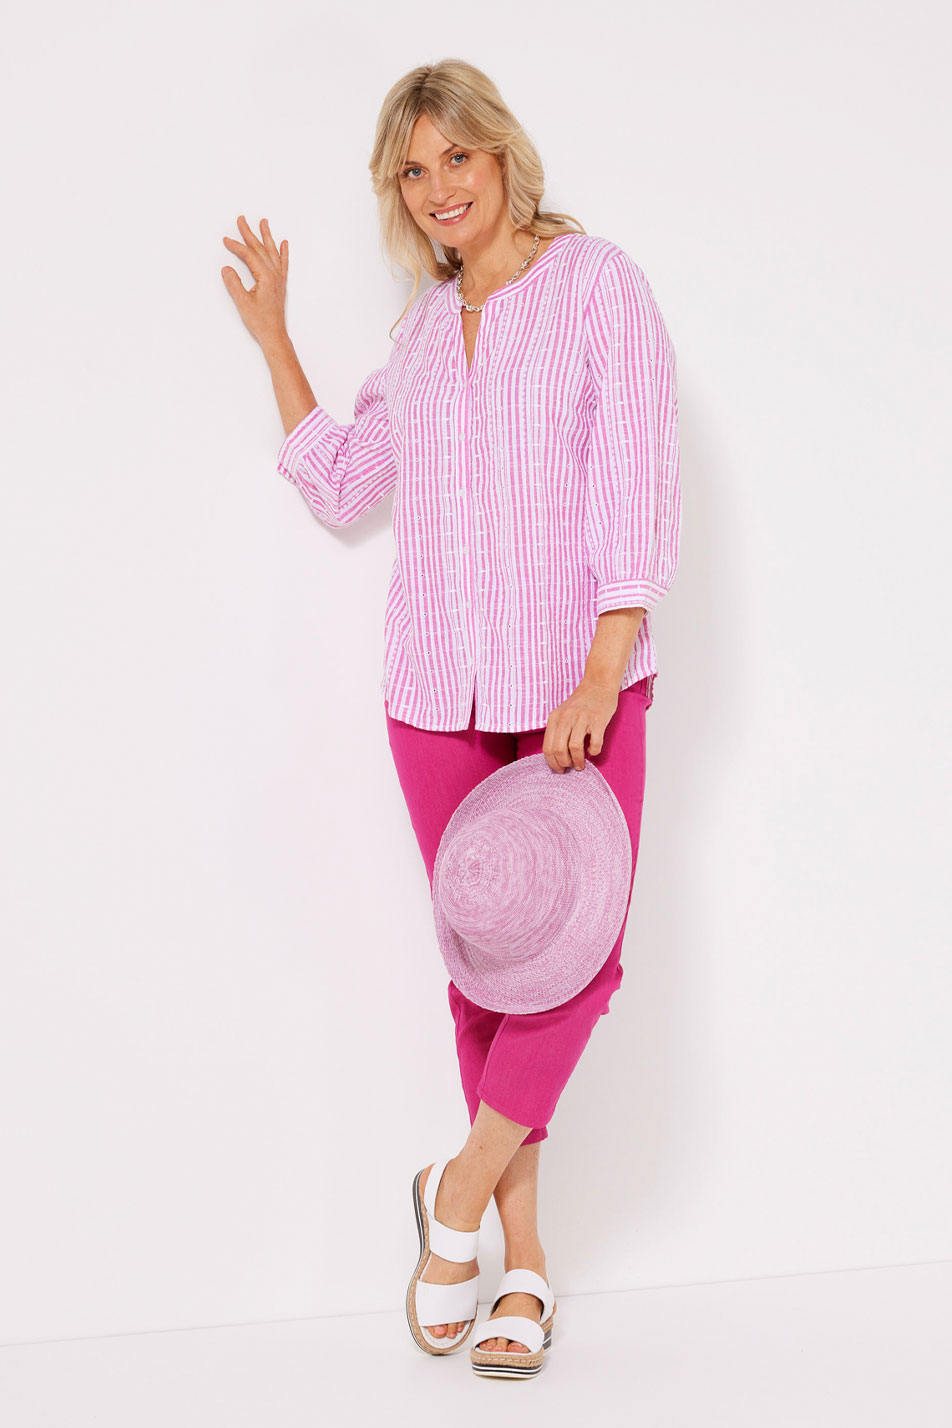 Model wearing Palermo stripe top in pink.